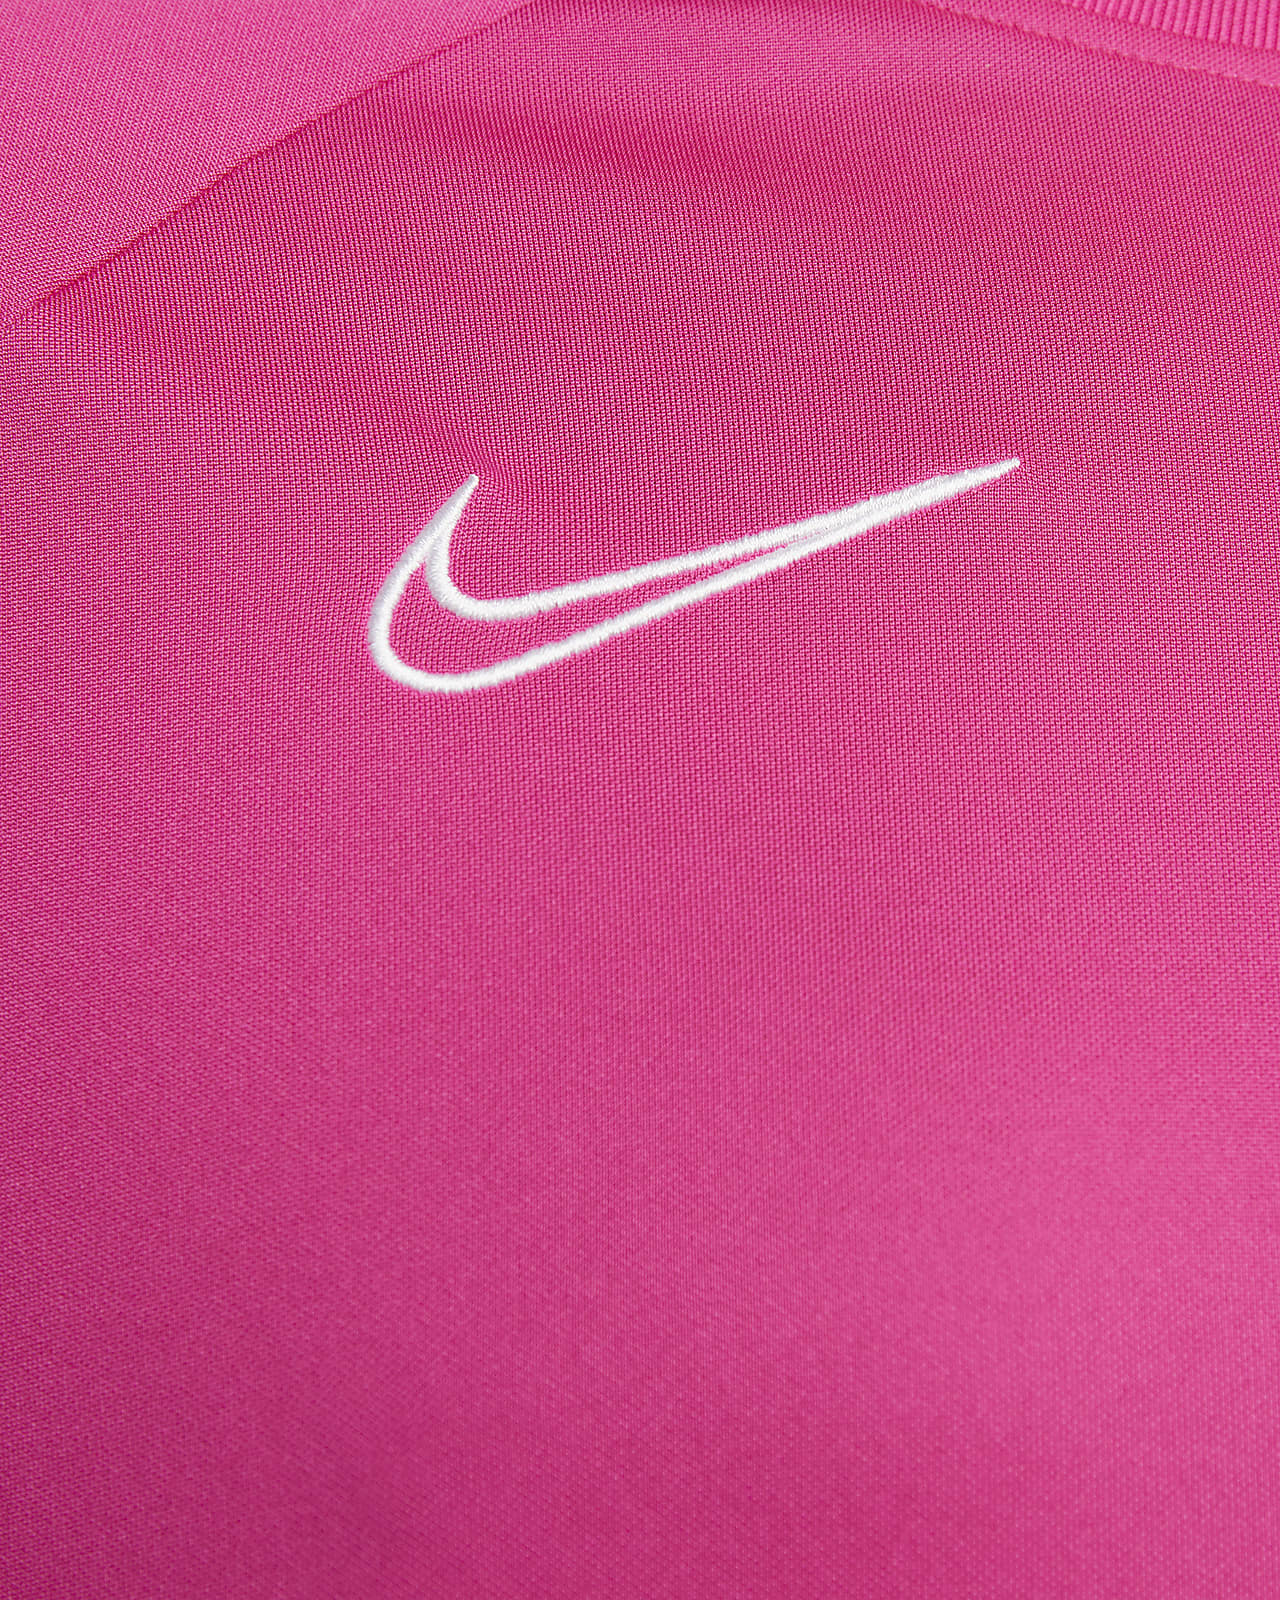 Mùa bóng đá đang đến, bạn đã sẵn sàng để sở hữu áo bóng đá Nike Dri-FIT Academy cho nam chưa? Với chất liệu độc quyền và thiết kế tinh tế, chiếc áo sẽ giúp bạn tỏa sáng trên sân cỏ. Hãy thể hiện đẳng cấp của mình với Nike ngay từ bây giờ.